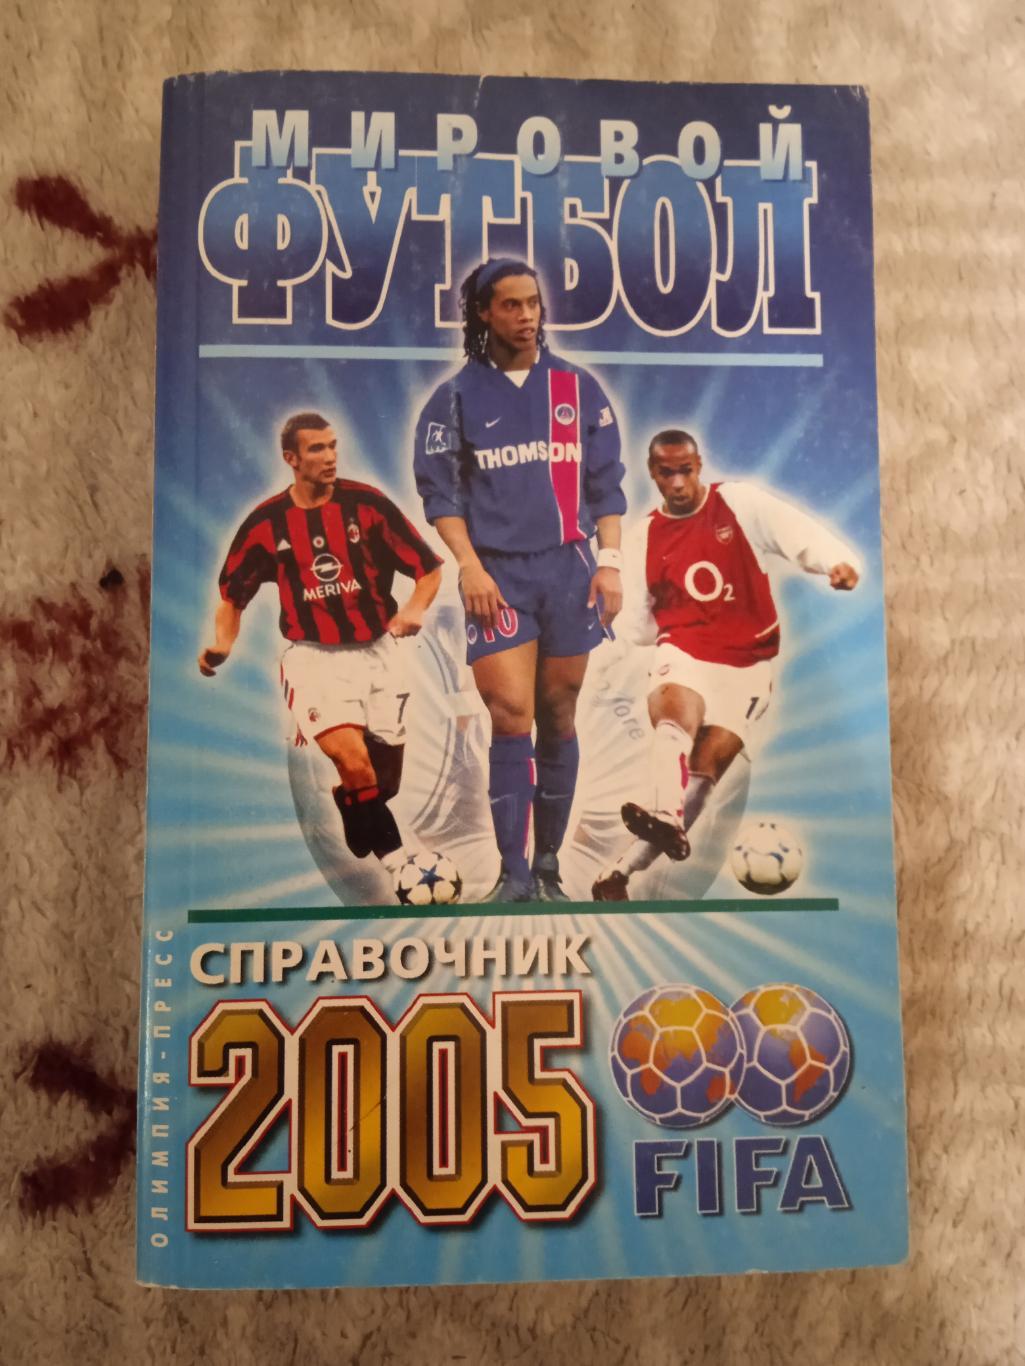 И.Гольдес.Мировой футбол 2005 (сезон 2003-2004).Москва.Олимпия-Пресс 2005.